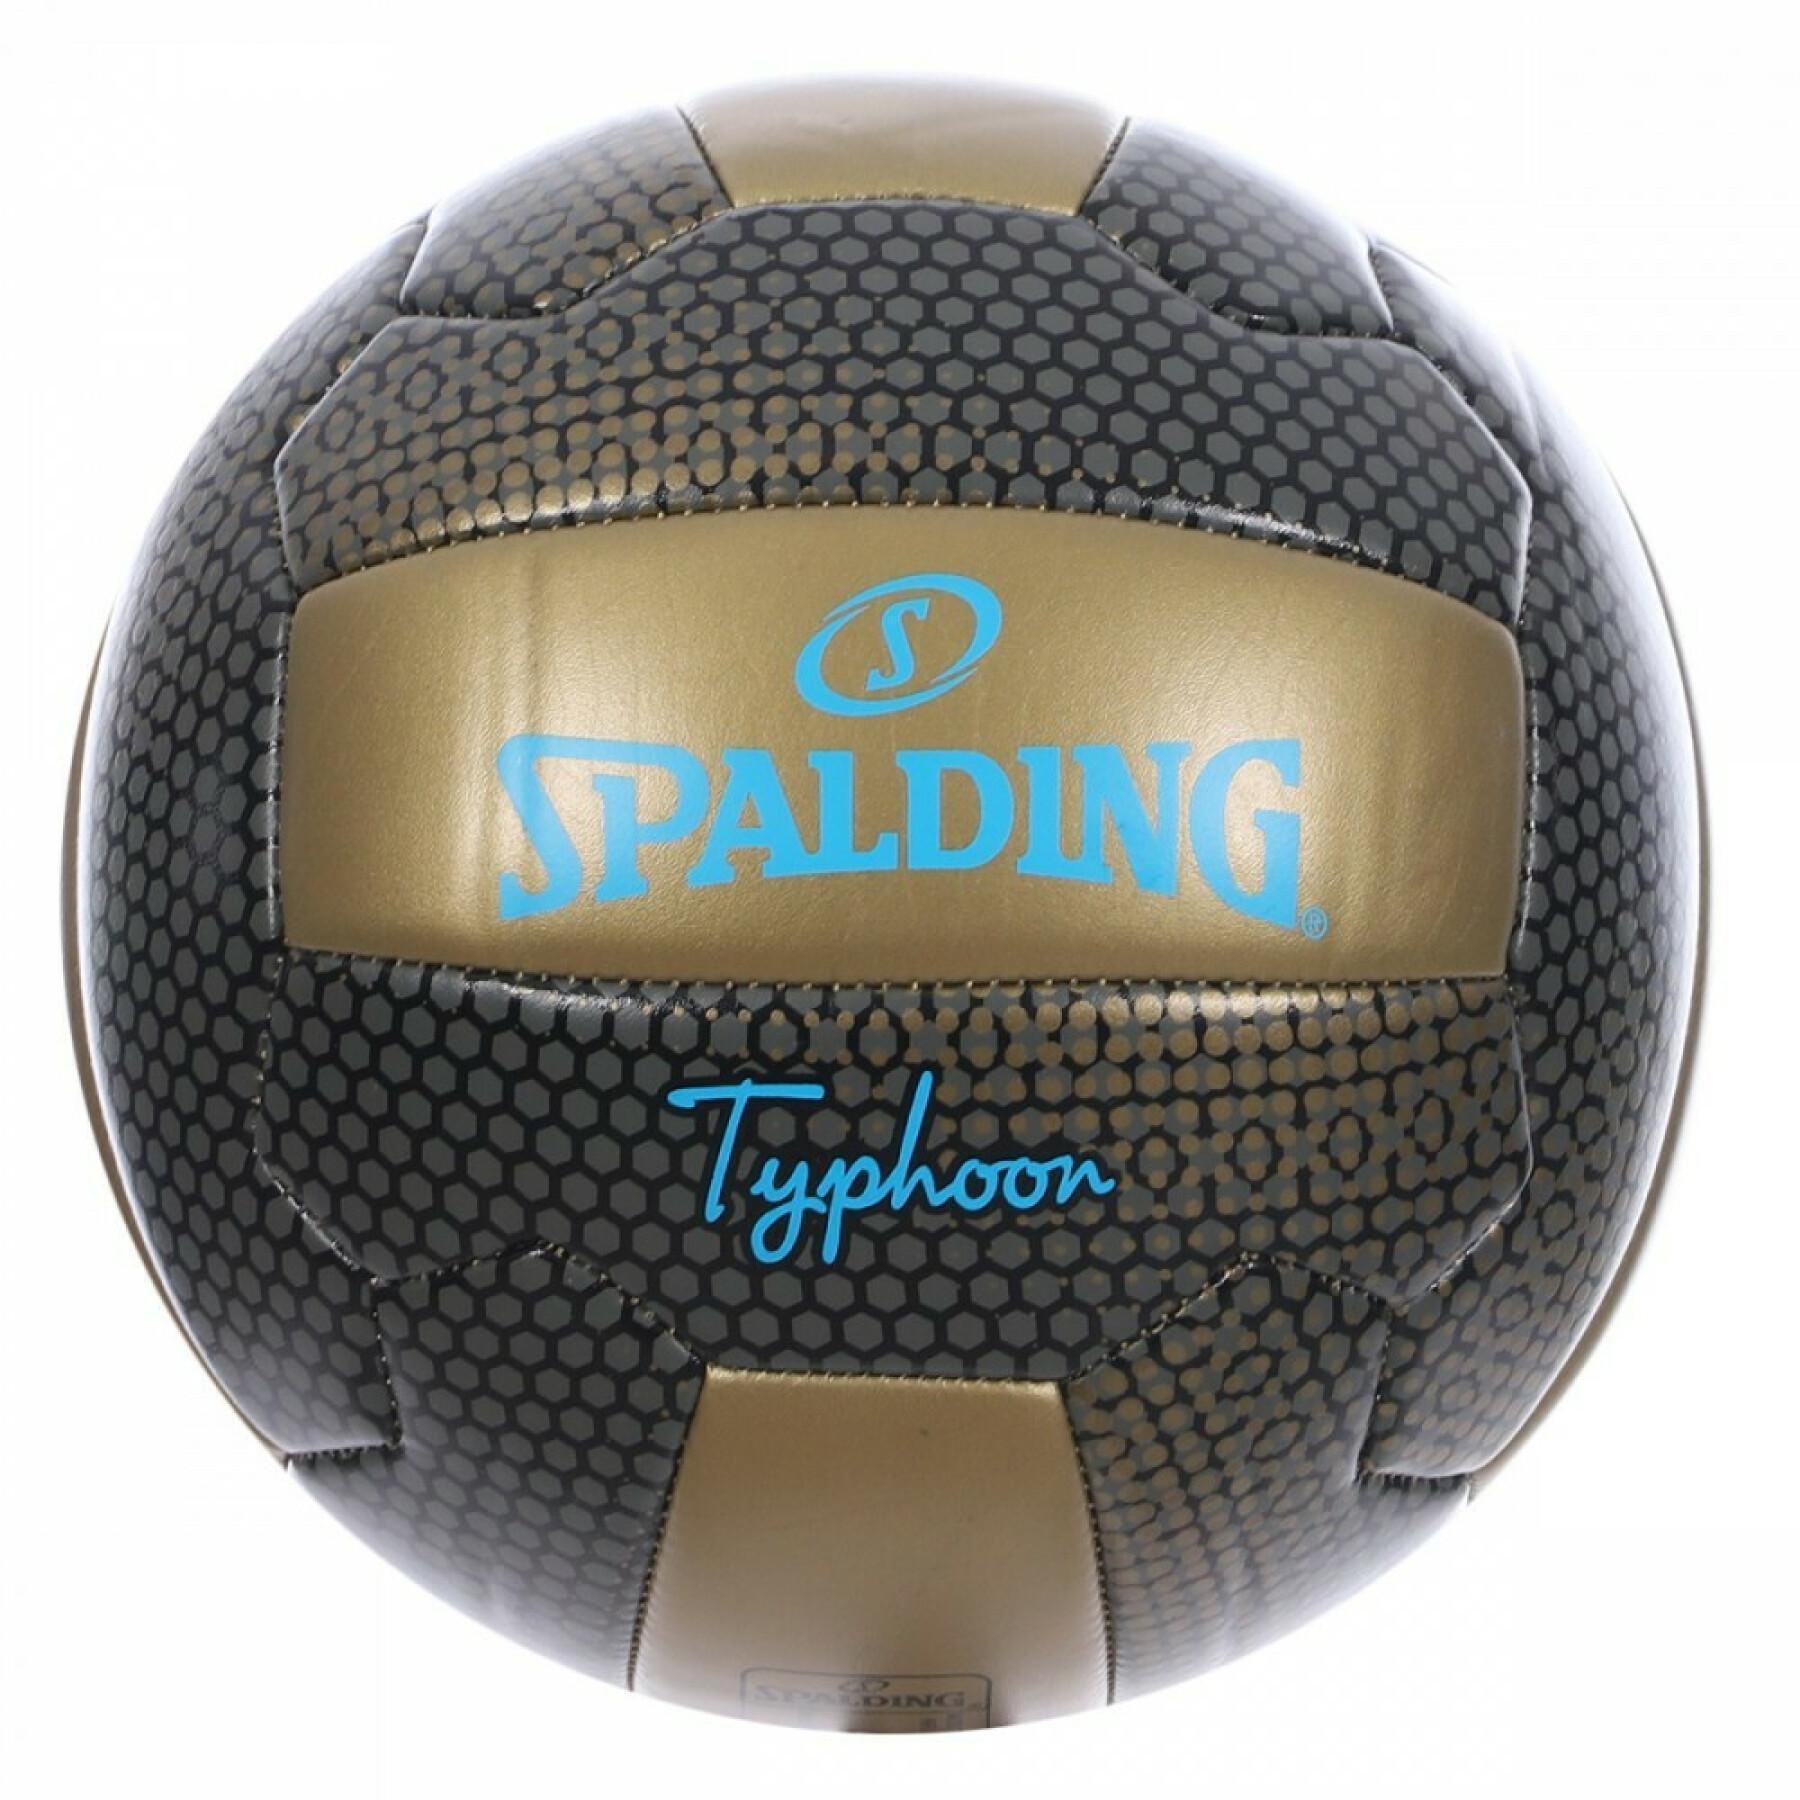 Balloon Spalding Beachvolleyball Typhoon (72-345z)